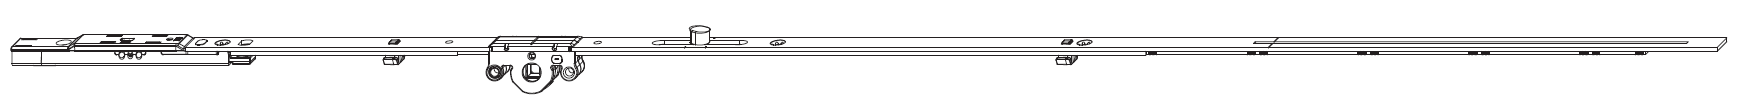 MAICO -  Cremonese MULTI-MATIC anta a bandiera altezza maniglia fissa con puntale chiusura ad espansione per seconda anta - gr / dim. 1950 - entrata 15 - alt. man. 500 - lbb/hbb 1701 - 1950